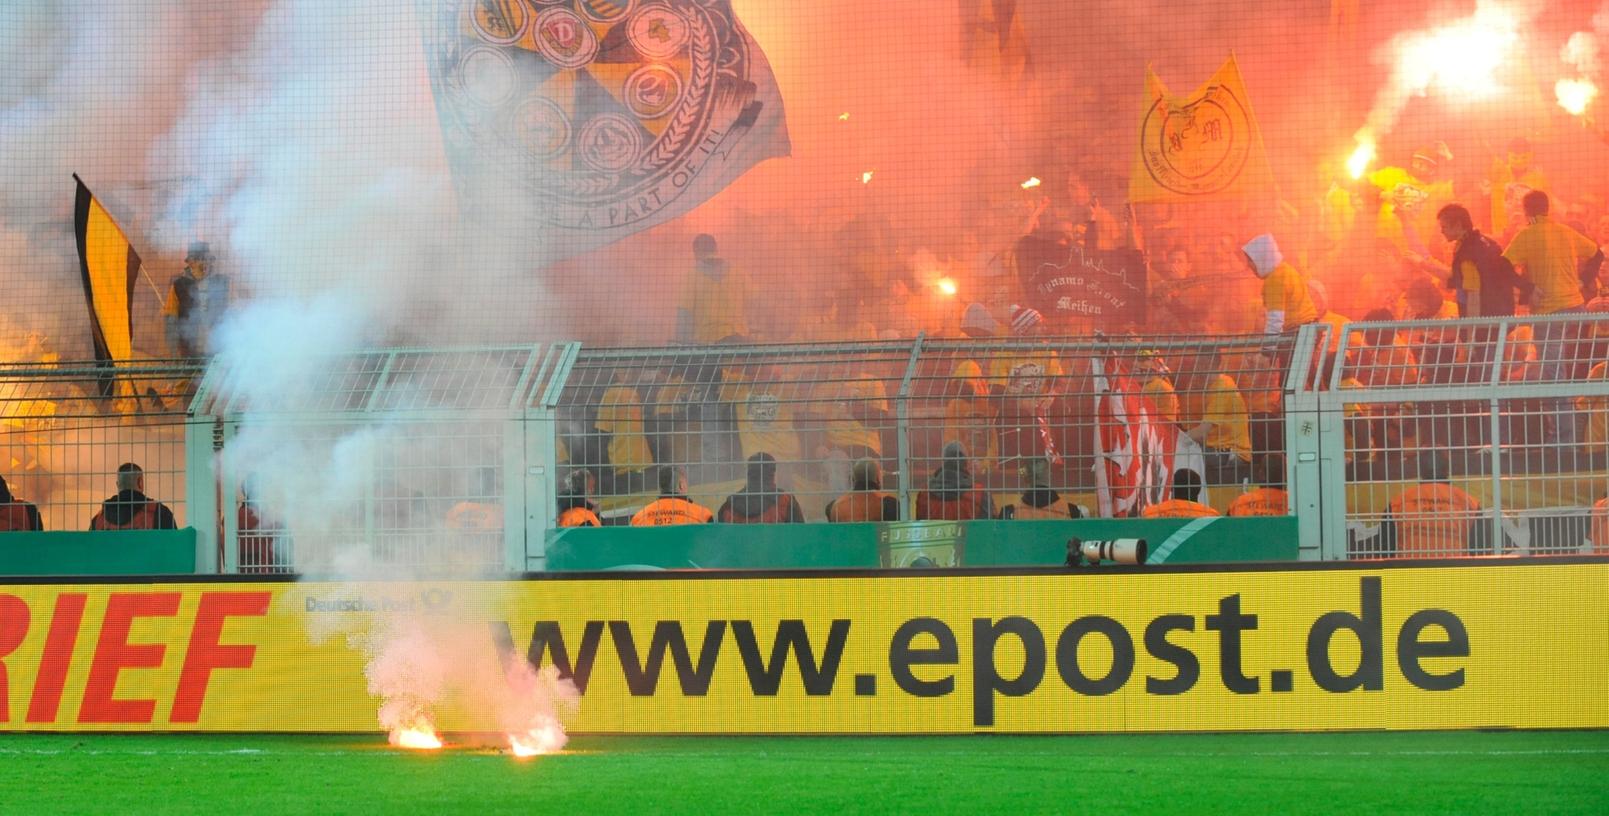 "Südländische Atmosphäre oder kriminelle "Chaoten"? Mit den Fackeln auf dem Spielfeld haben die Dynamo-Fans dem Ansinnen der Ultras jedenfalls einen Bärendienst erwiesen.